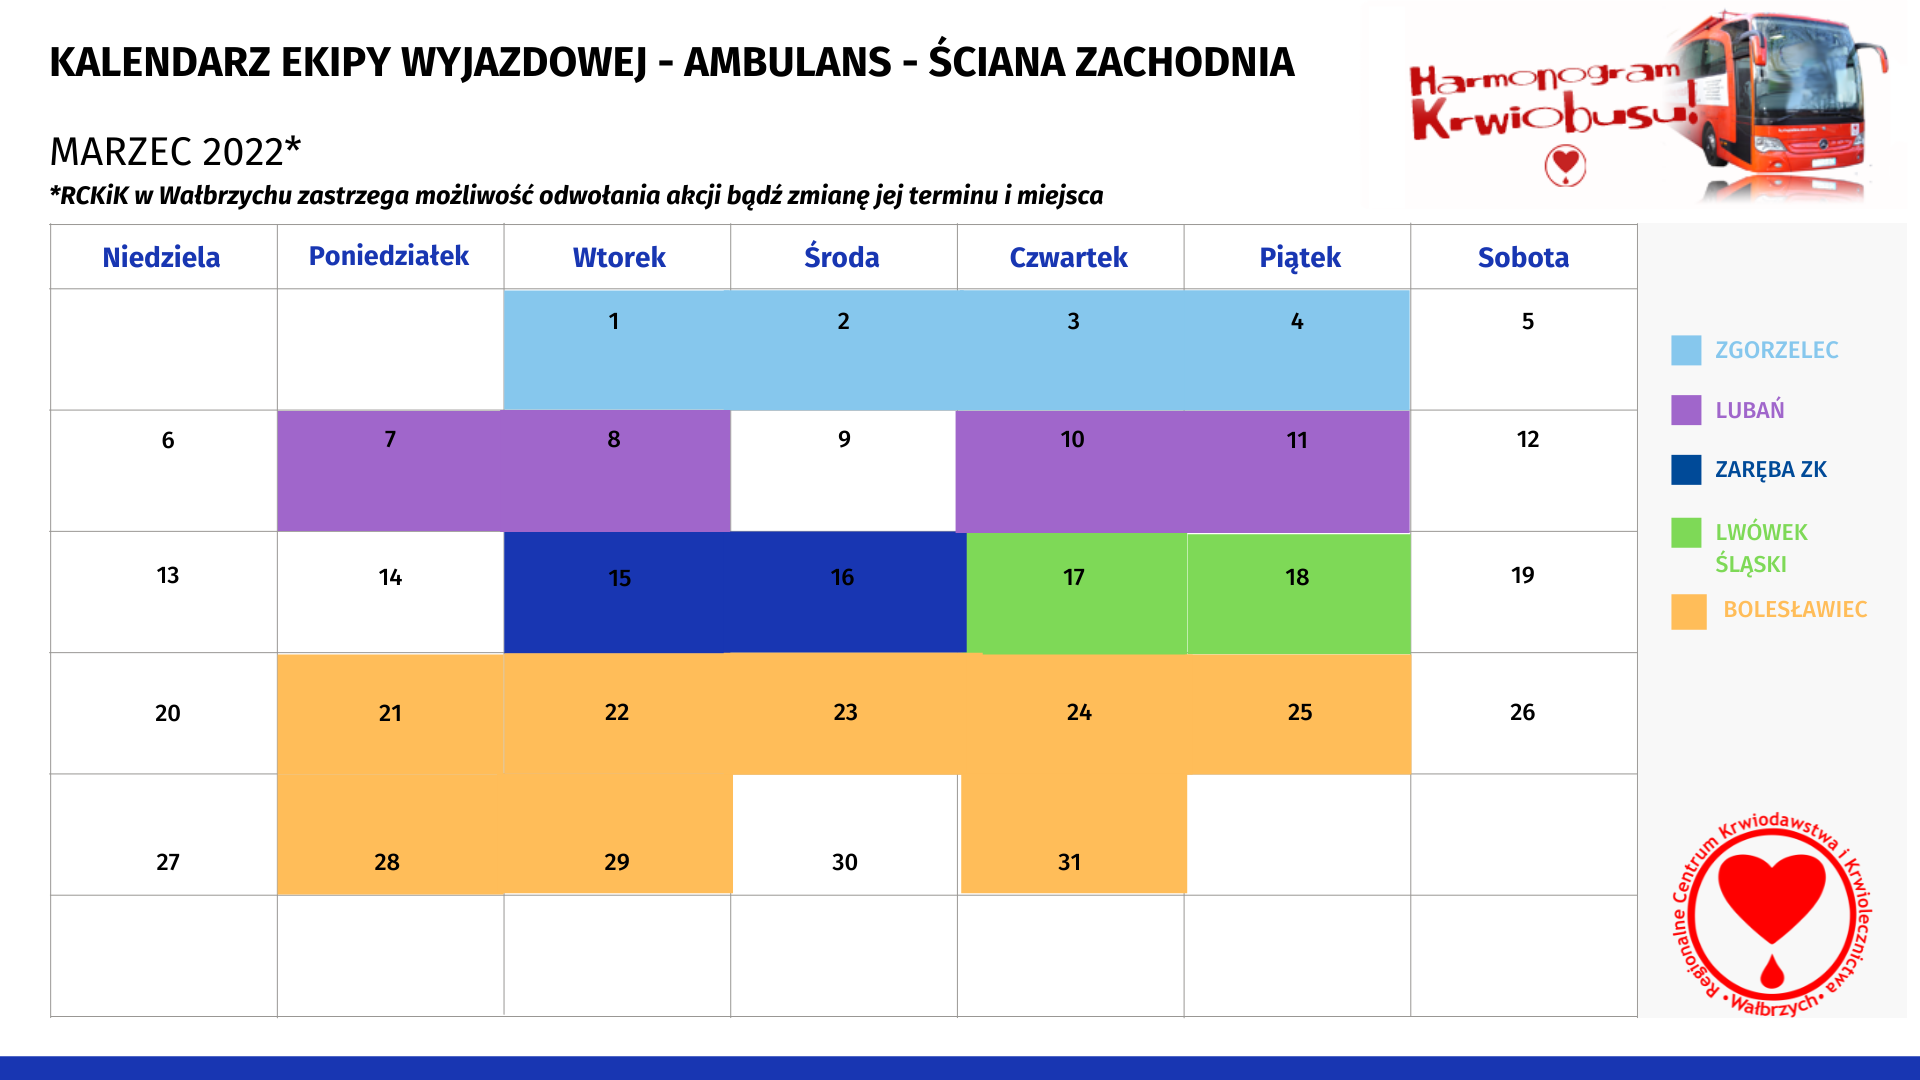 Kalendarz ekipy wyjazdowej Ambulans